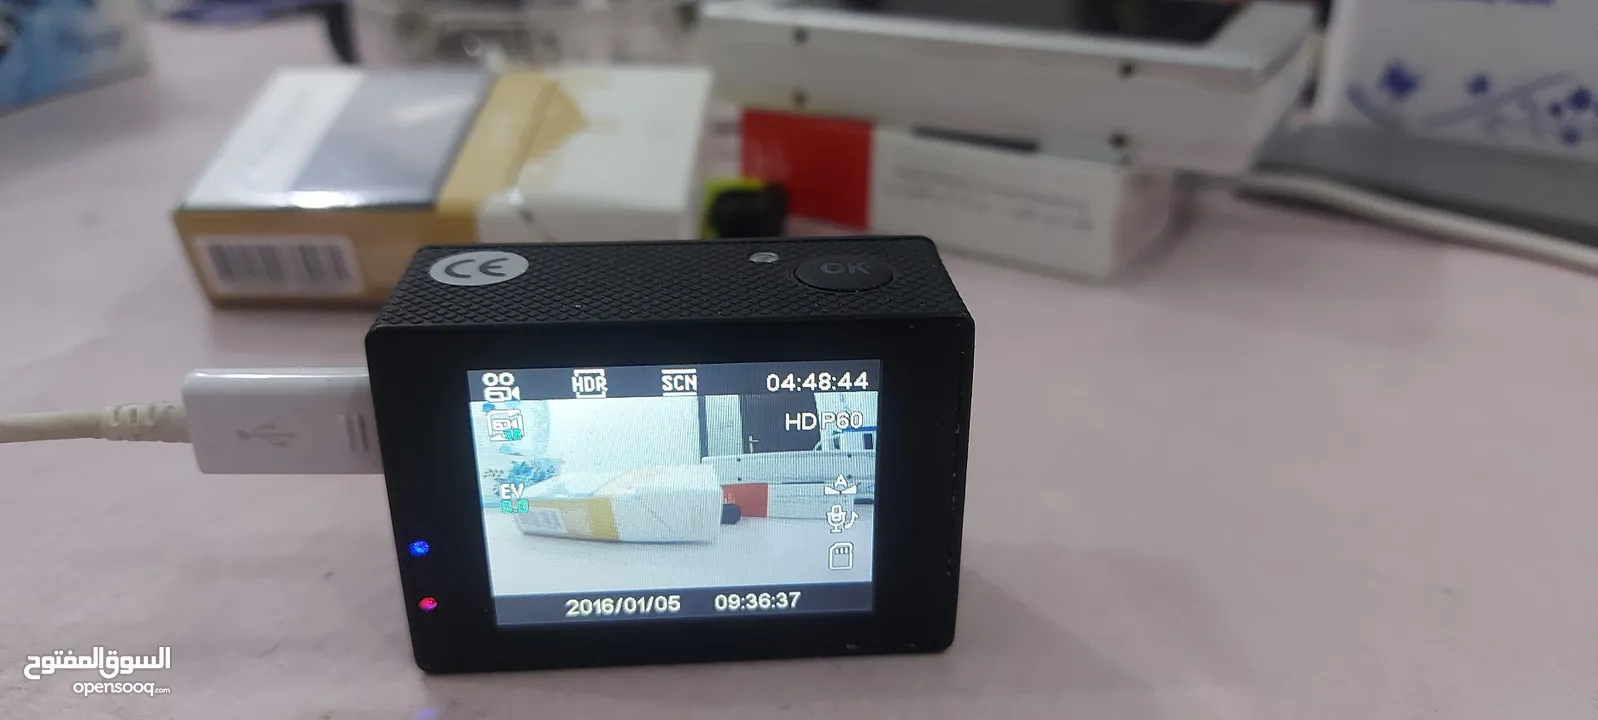 للبيع أصغر كاميرا دقة للتصوير - (224336684) | السوق المفتوح